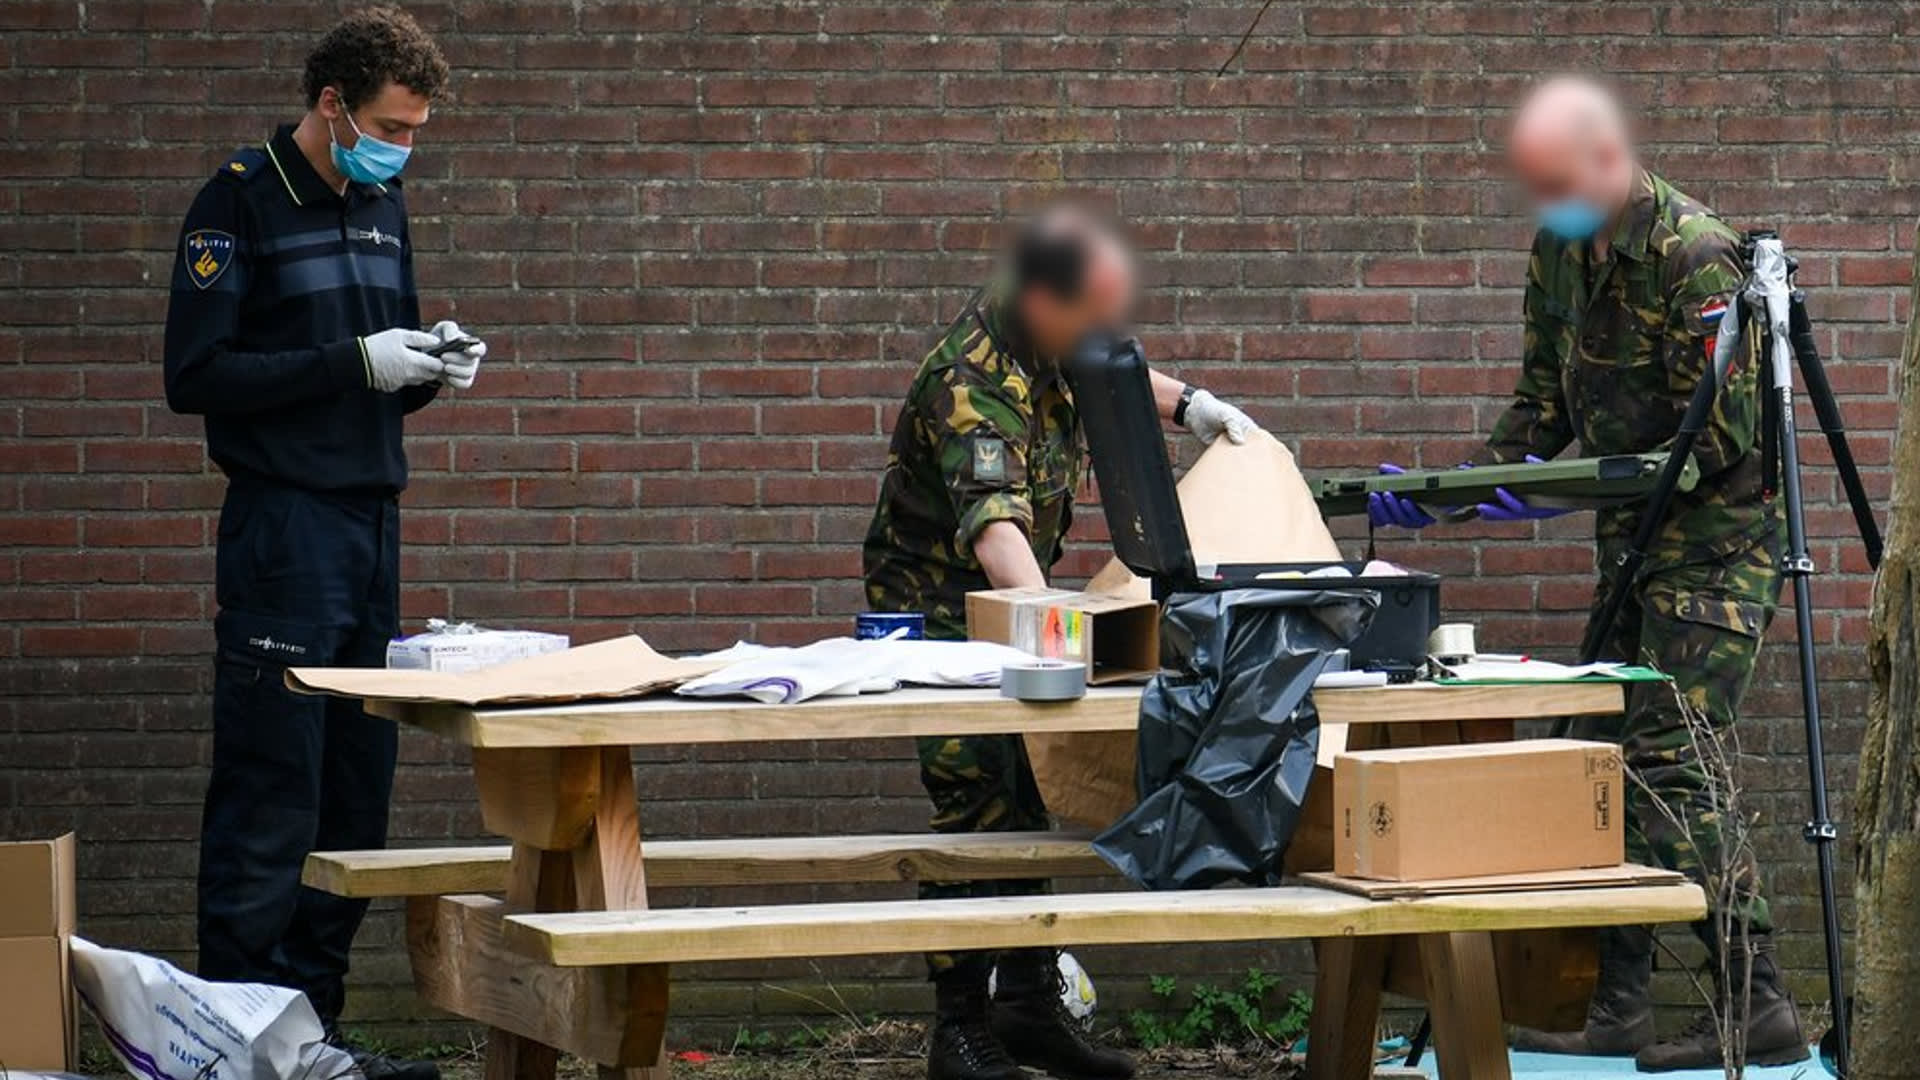 Politie vindt wapenarsenaal met bazooka's in schuur Alphen aan den Rijn